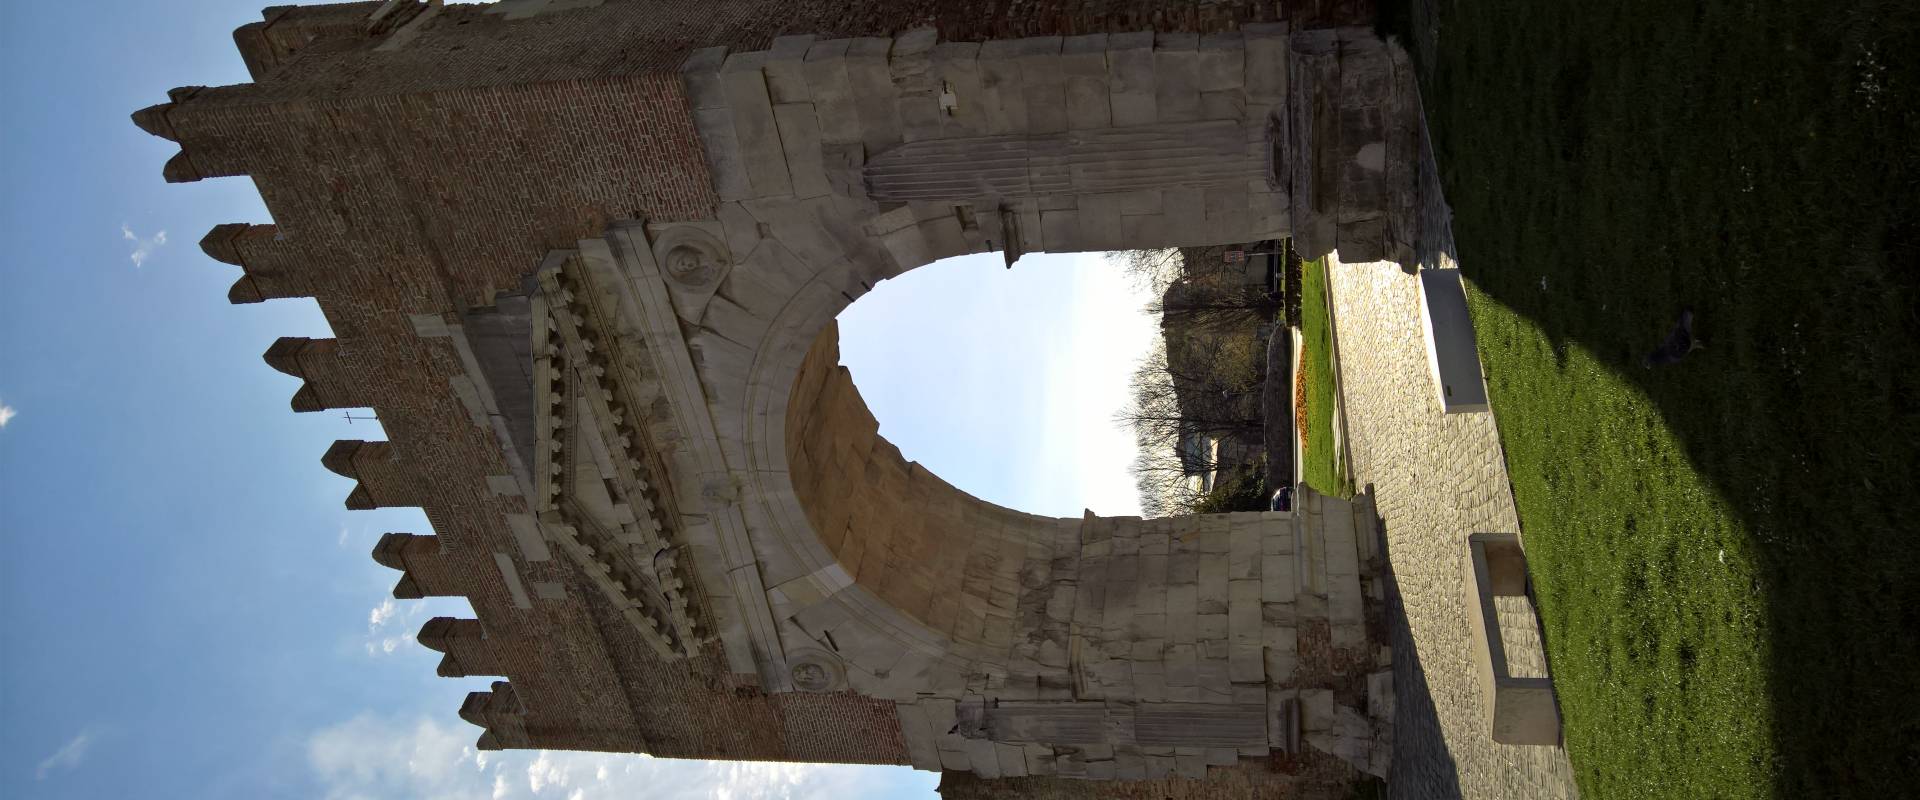 L'Arco di Augusto a Rimini photo by Supermabi